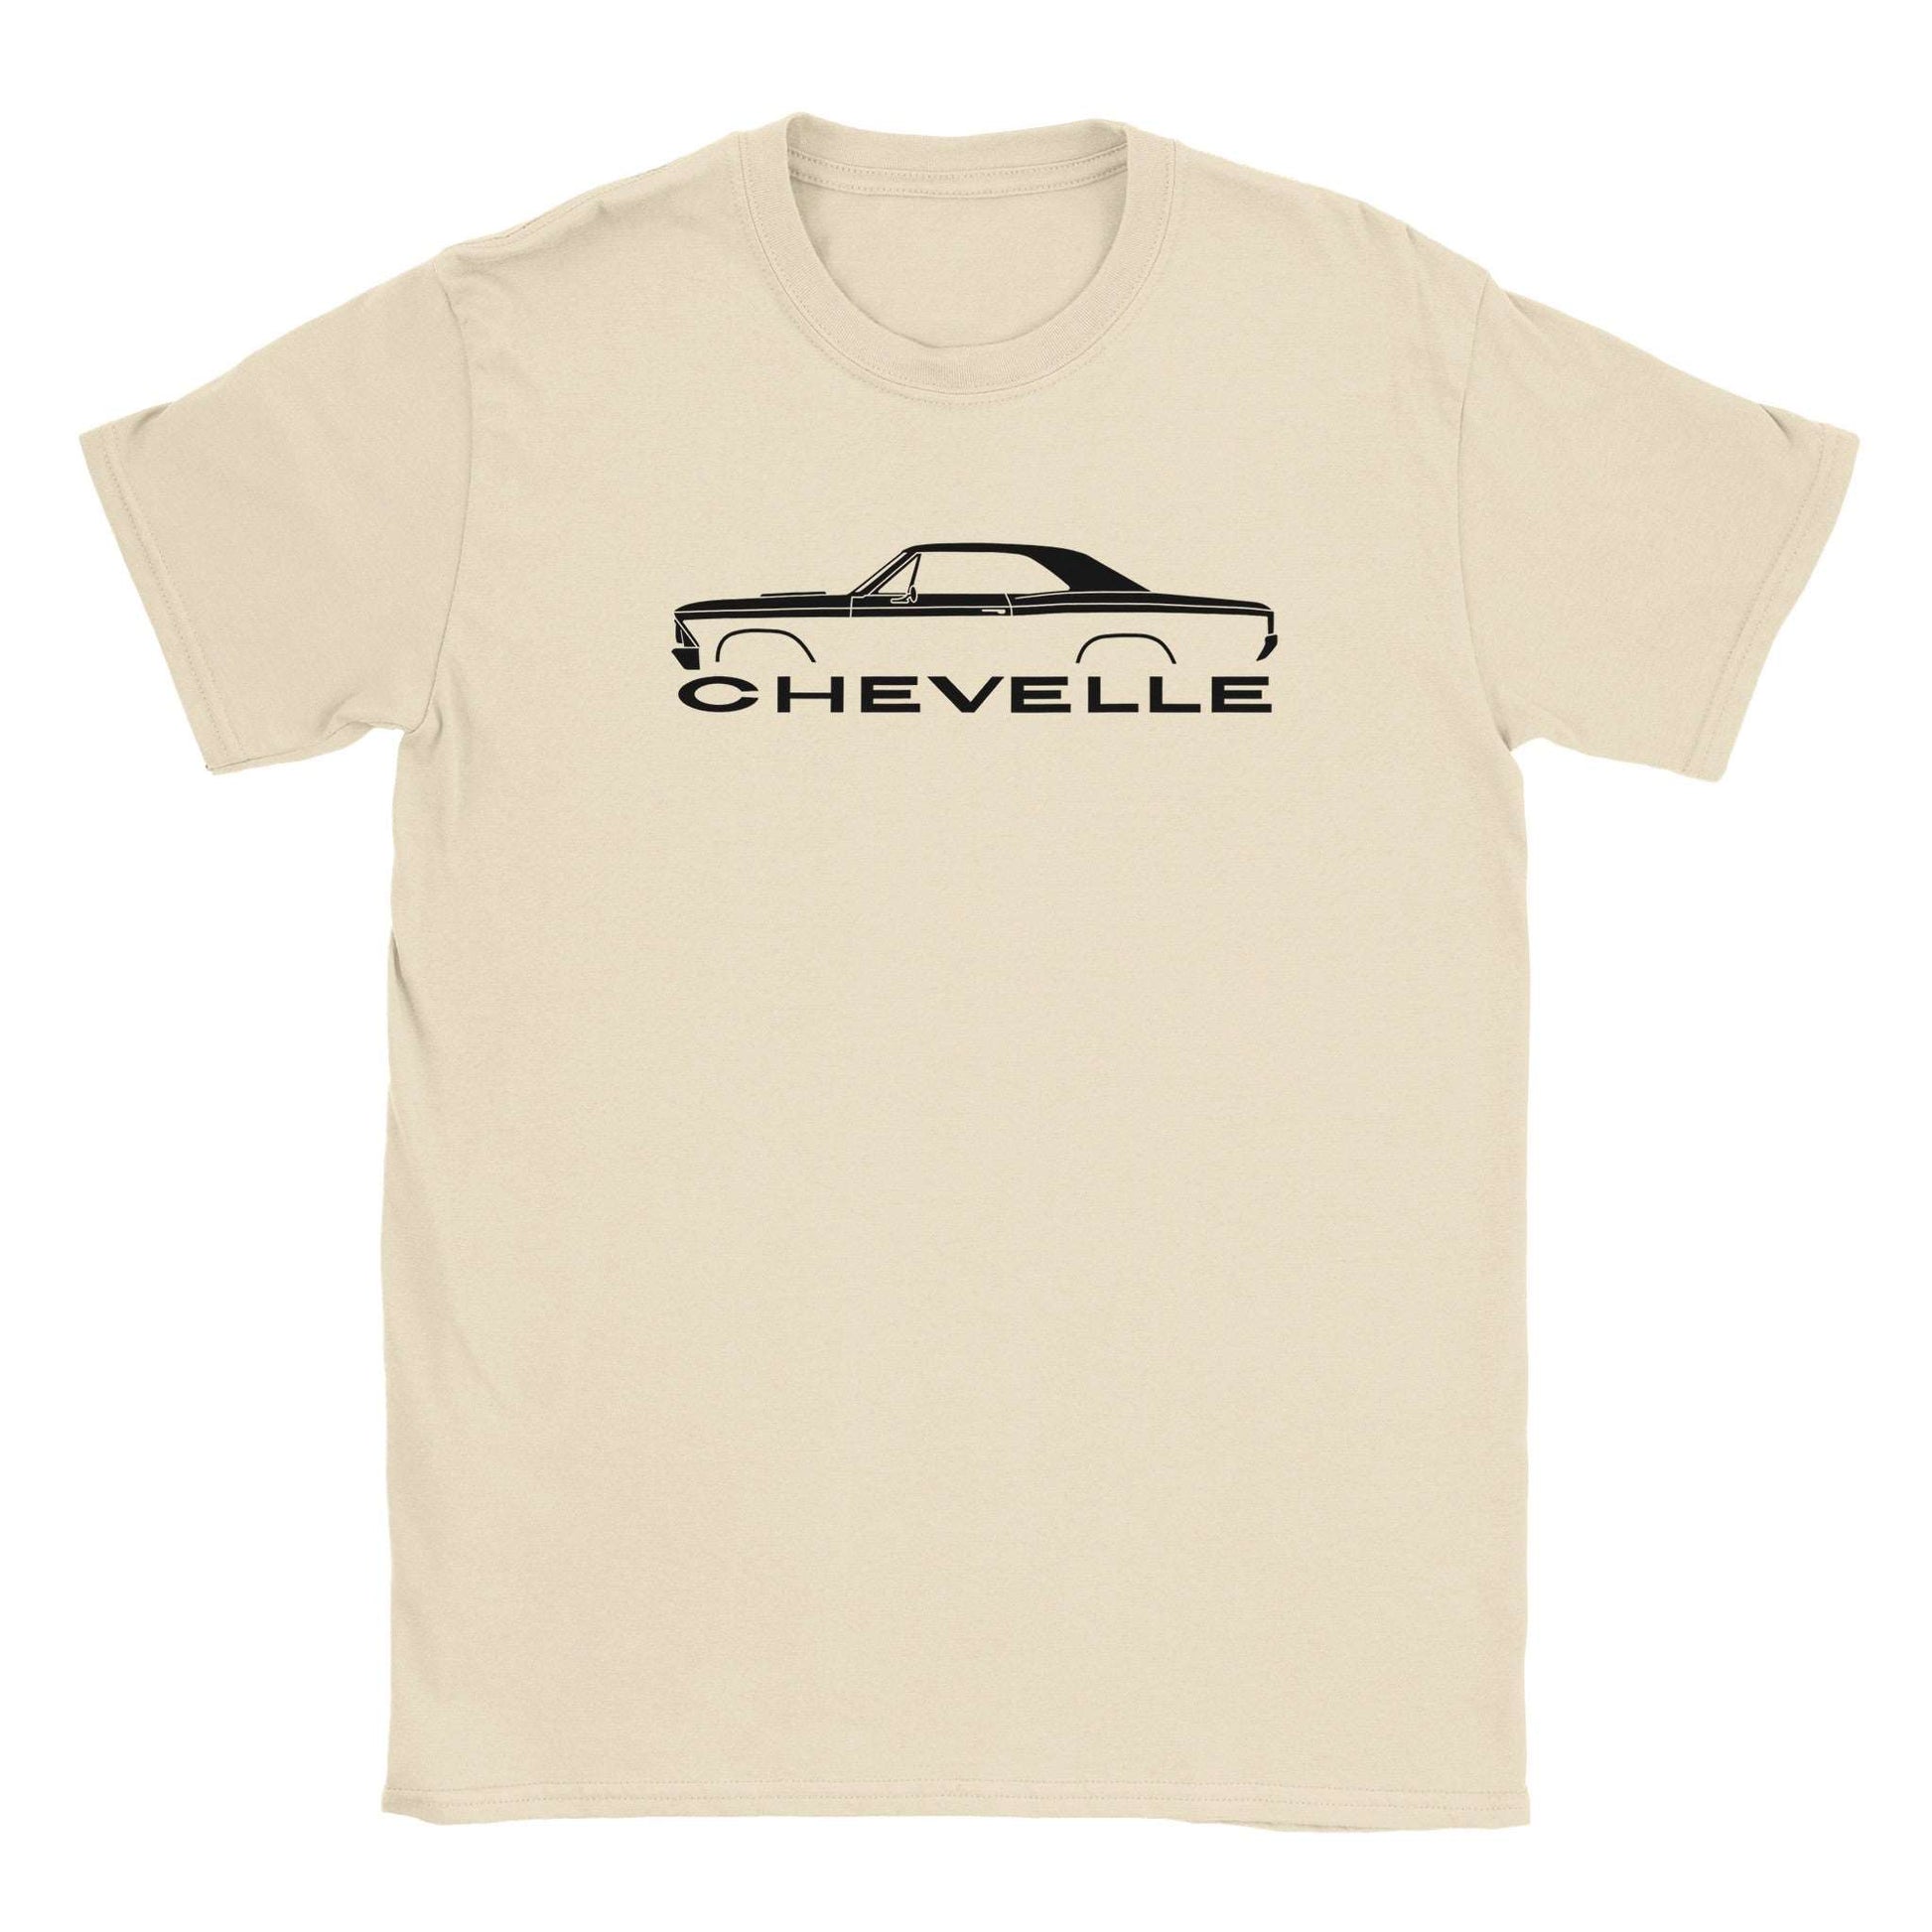 66 Chevelle T-shirt - Mister Snarky's